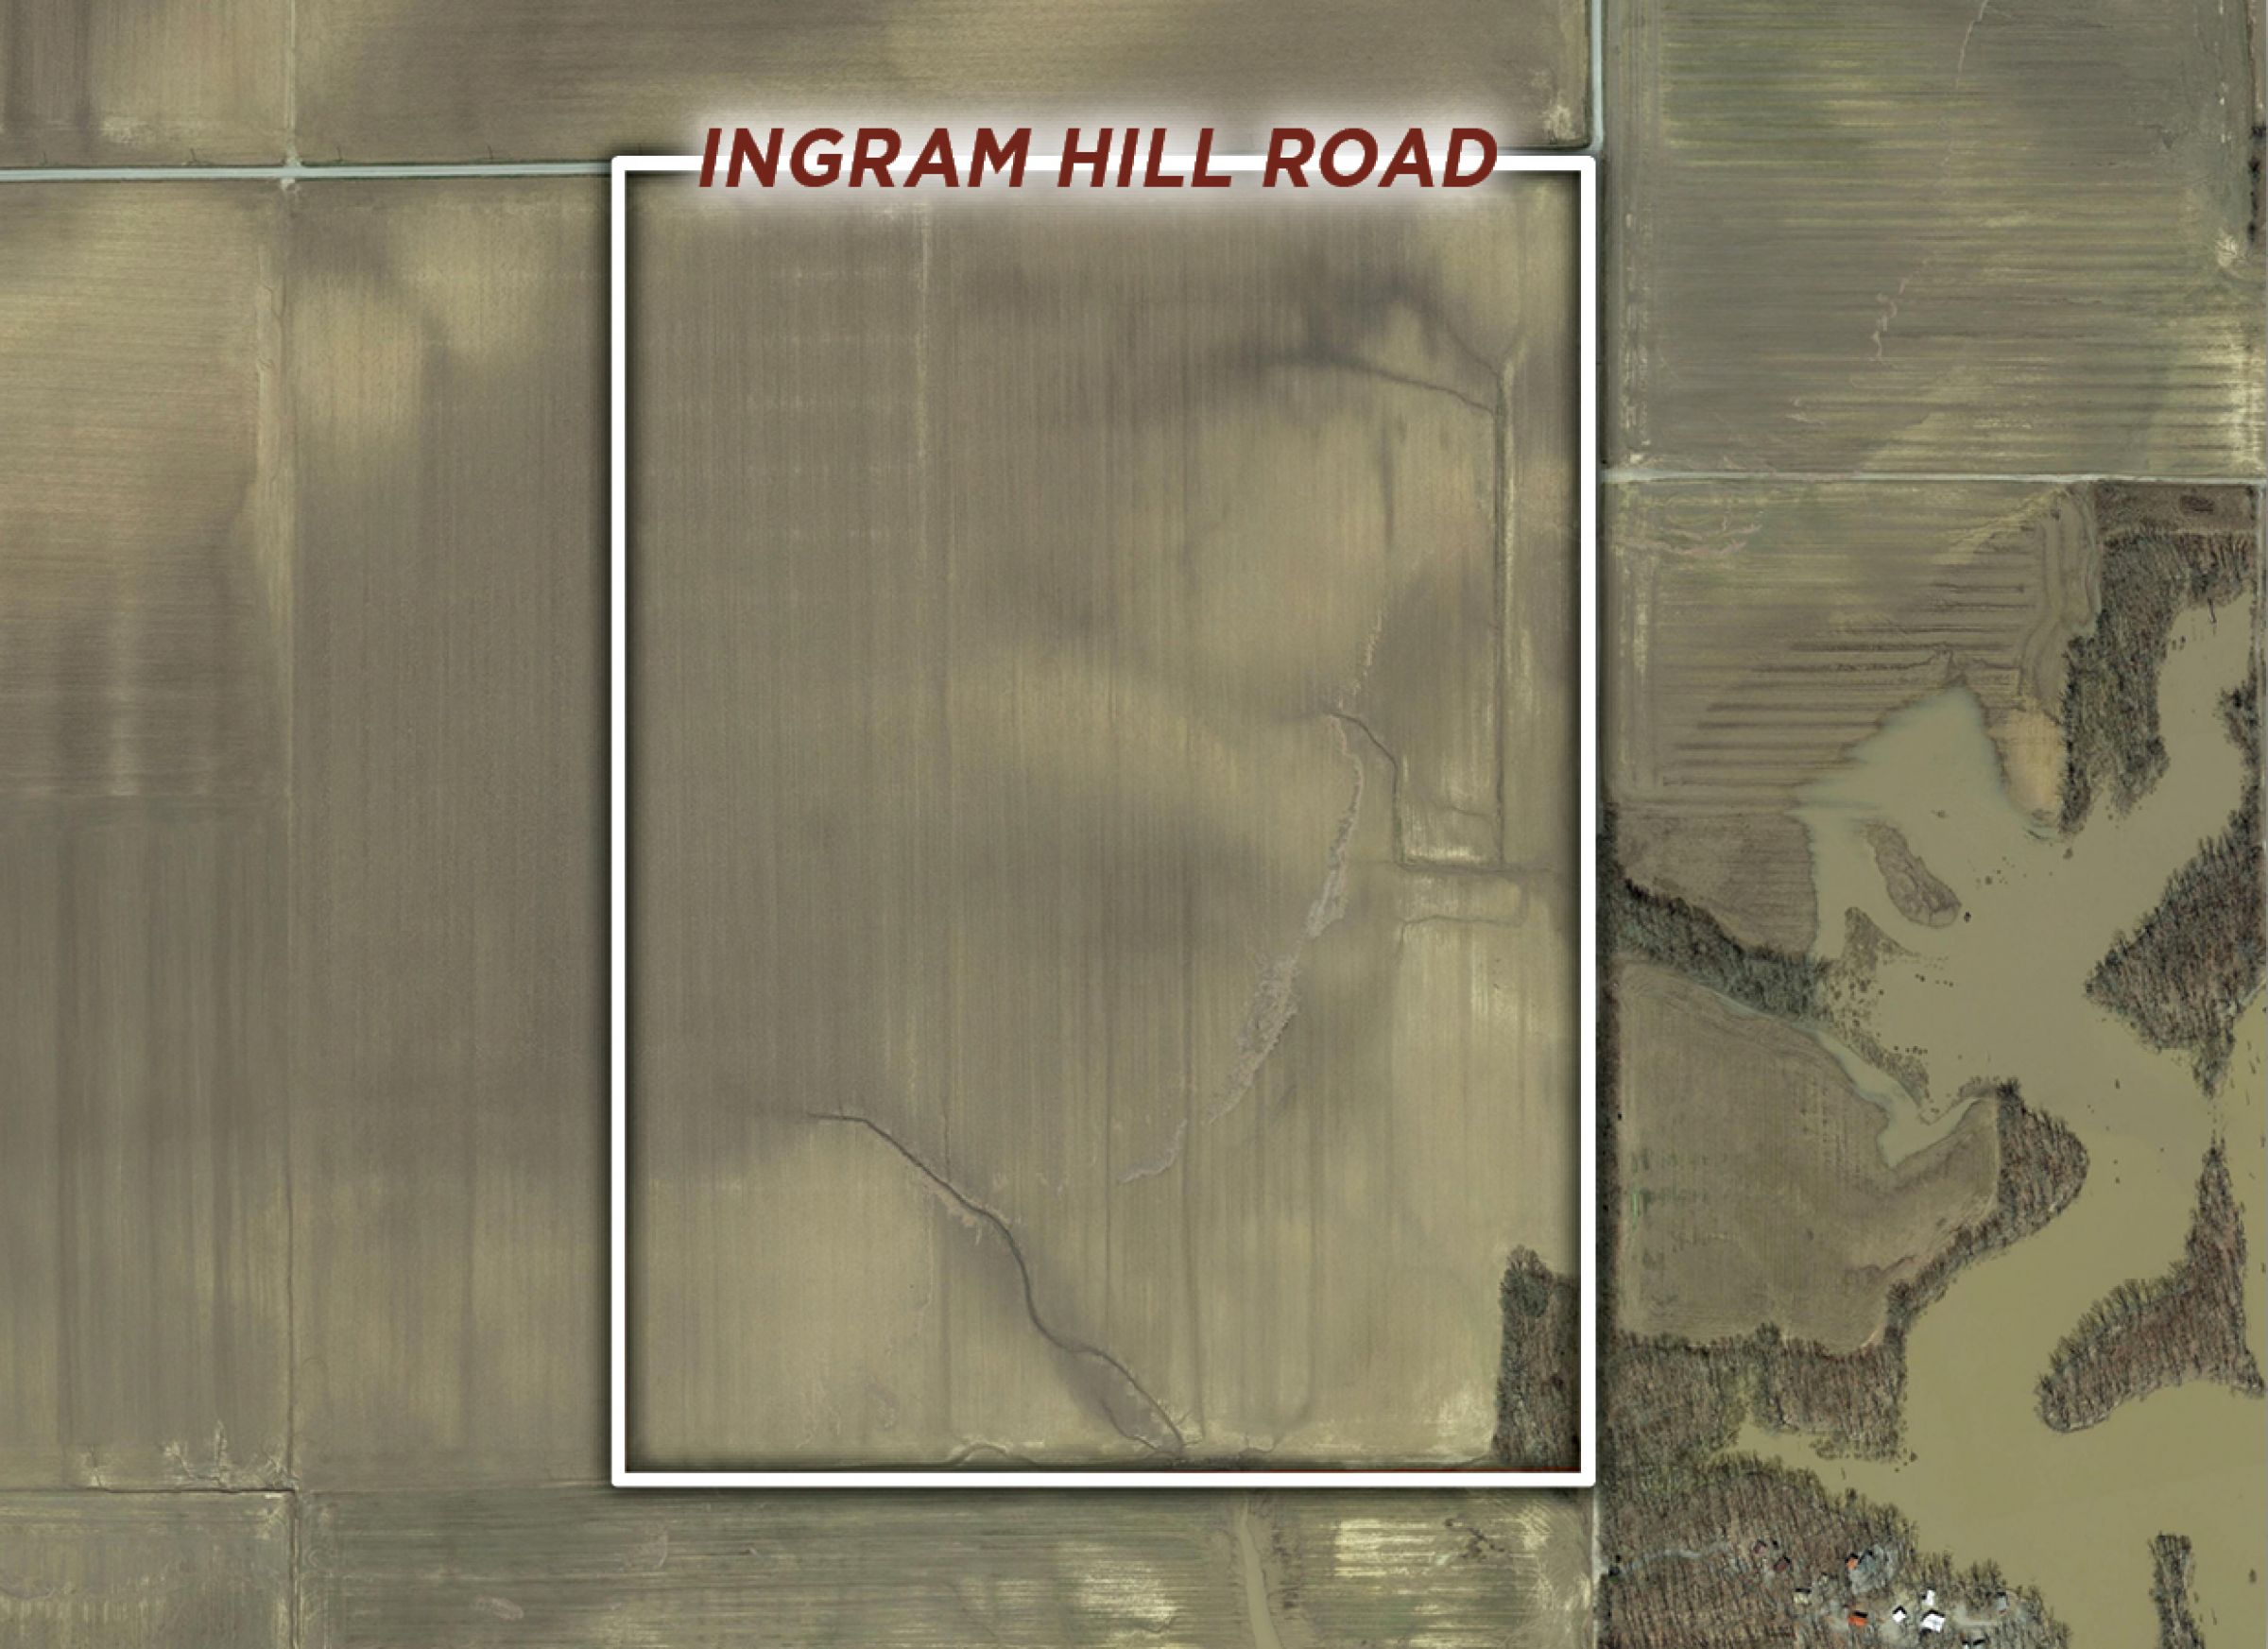 6-ingram-hill-road-harrisburg-62946-2-2020-10-15-152717.jpg